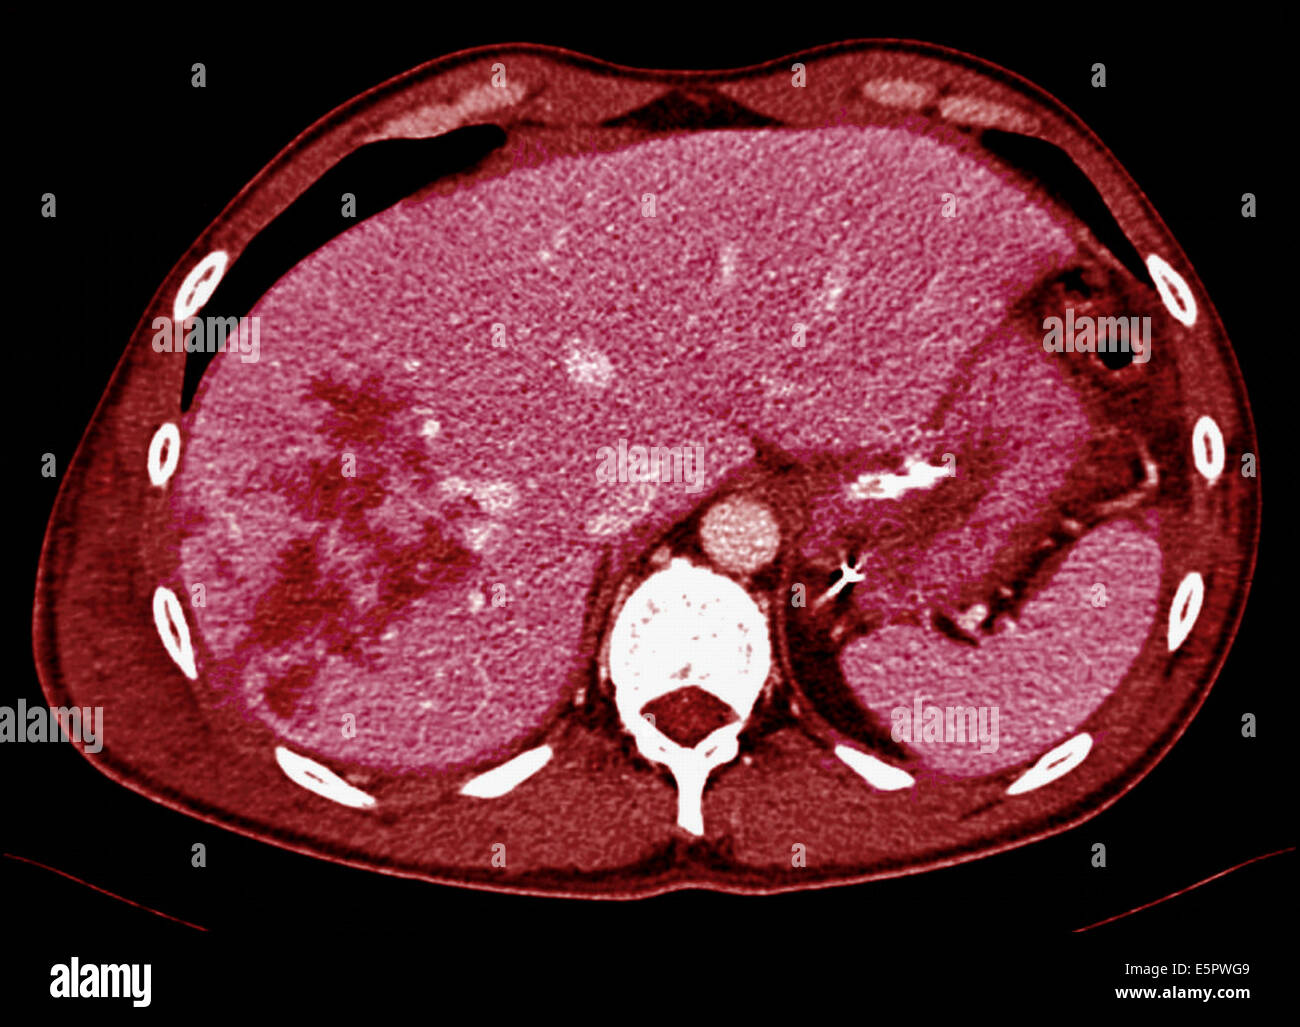 La tomographie axiale (scanner de l'abdomen montrant les ...